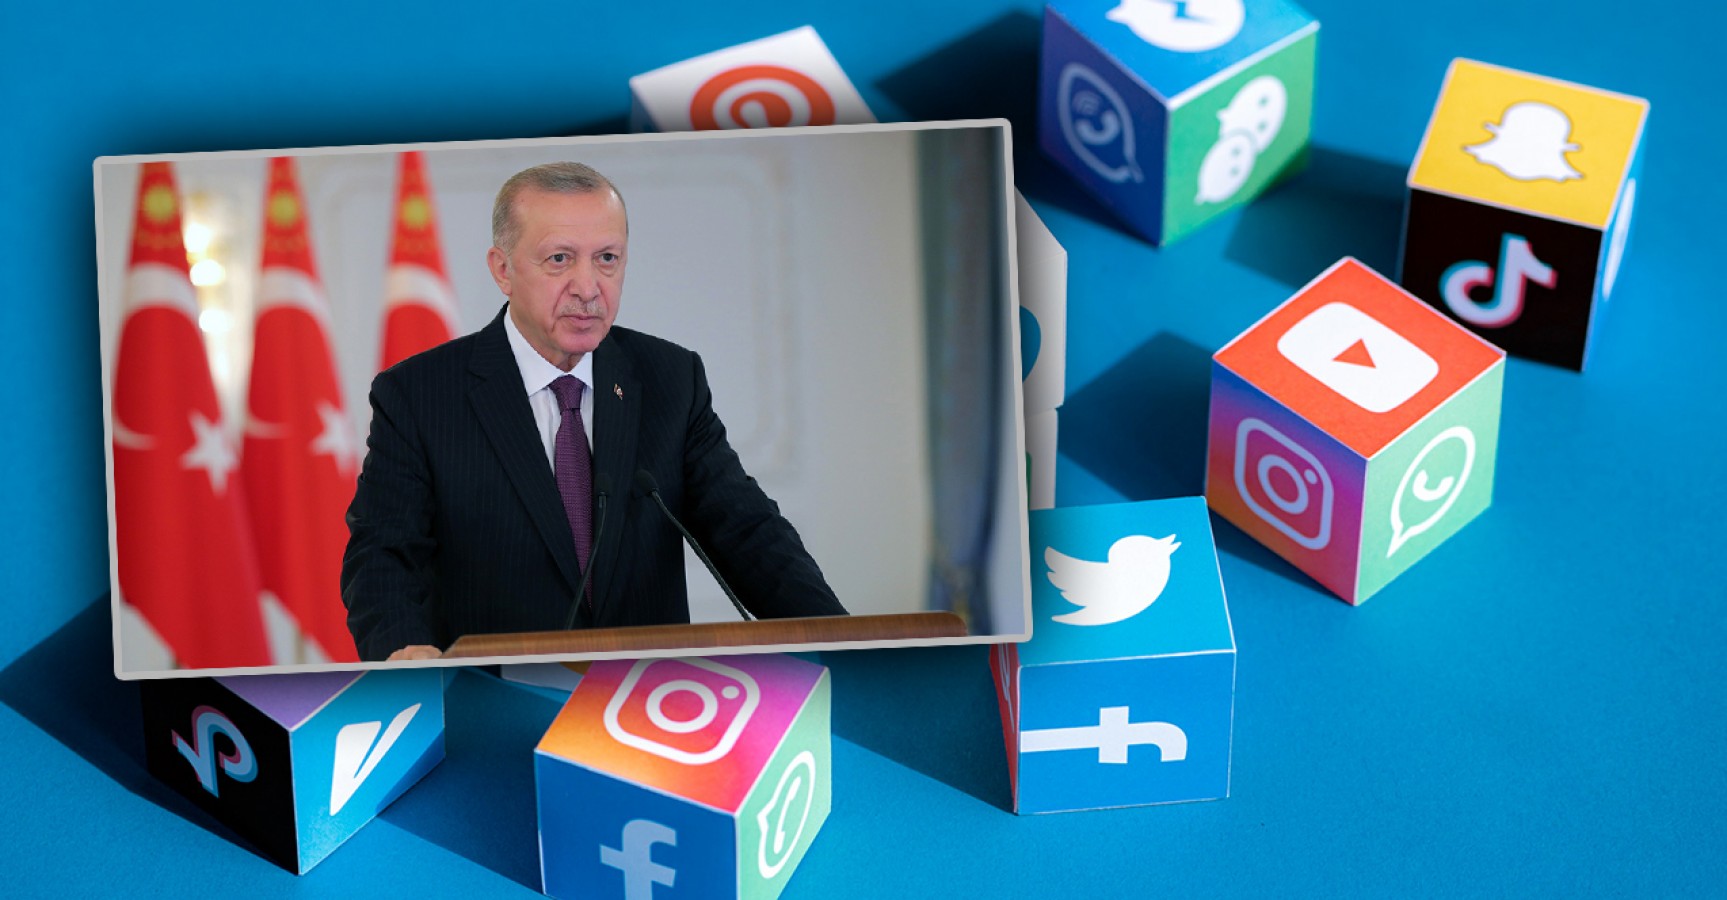 Cumhurbaşkanı Erdoğan'dan sosyal medya mesajı: "Milli güvenlik tehdidi";